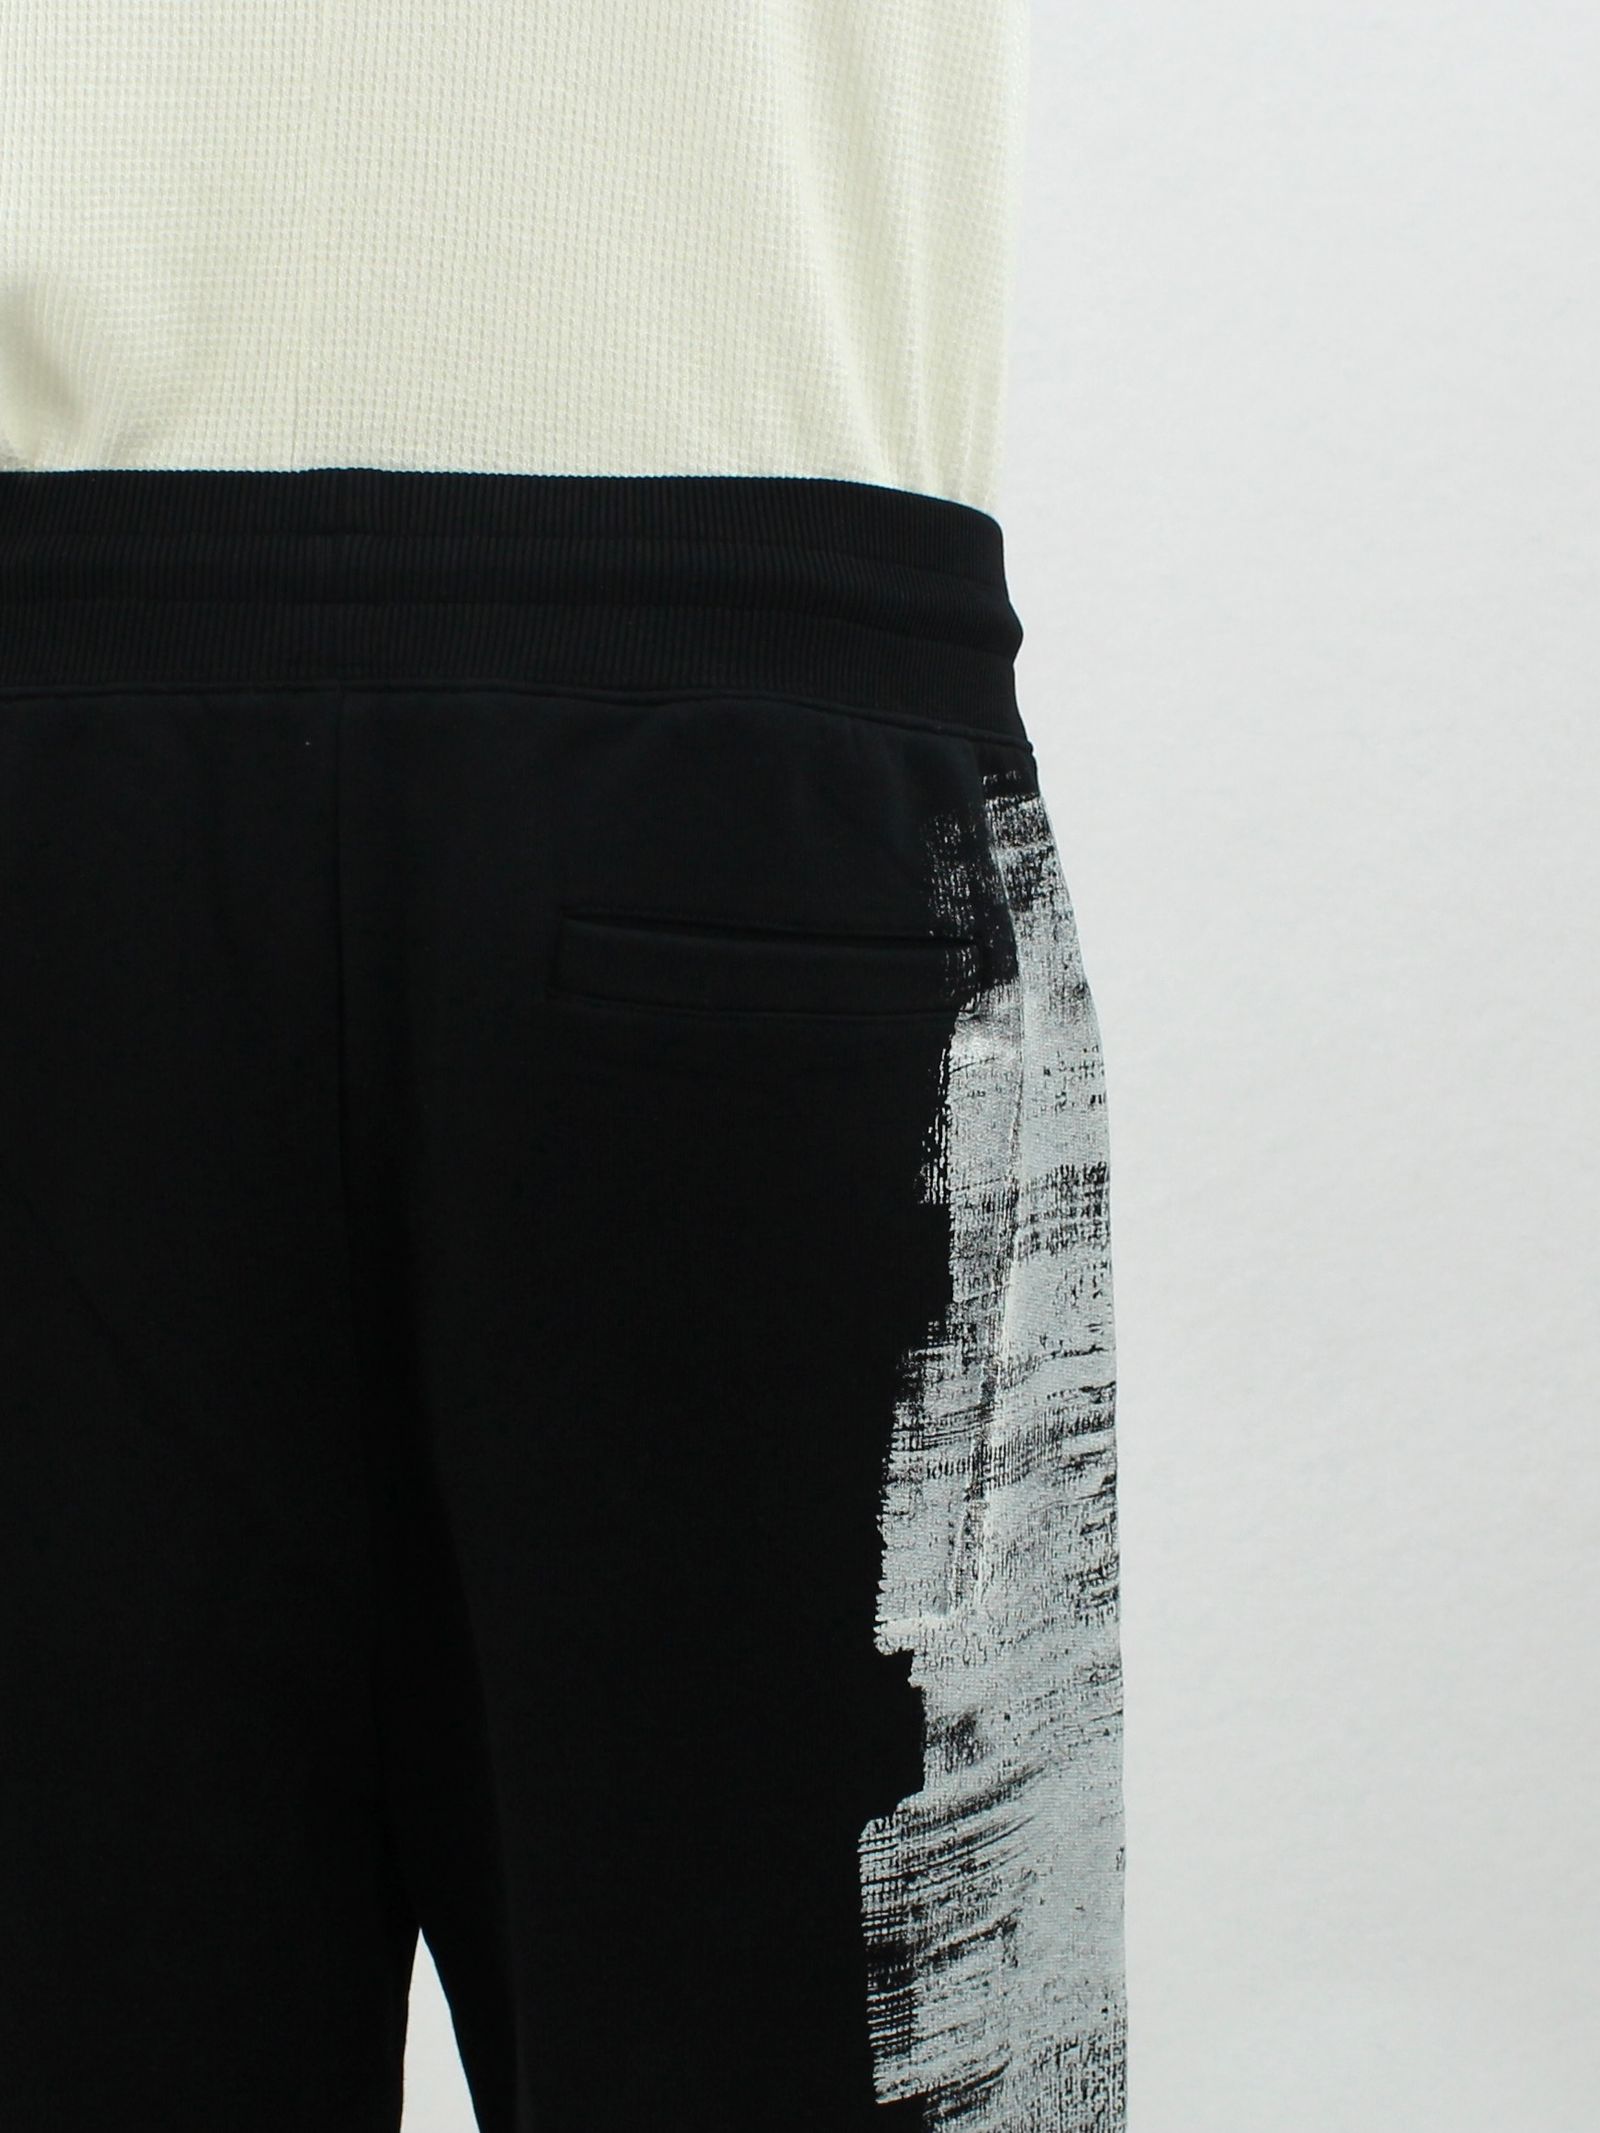 ペイント ロゴ スウェットパンツ / MOD LUX PAINTED JERSEY PANT / ブラック × ホワイト - S - ブラック